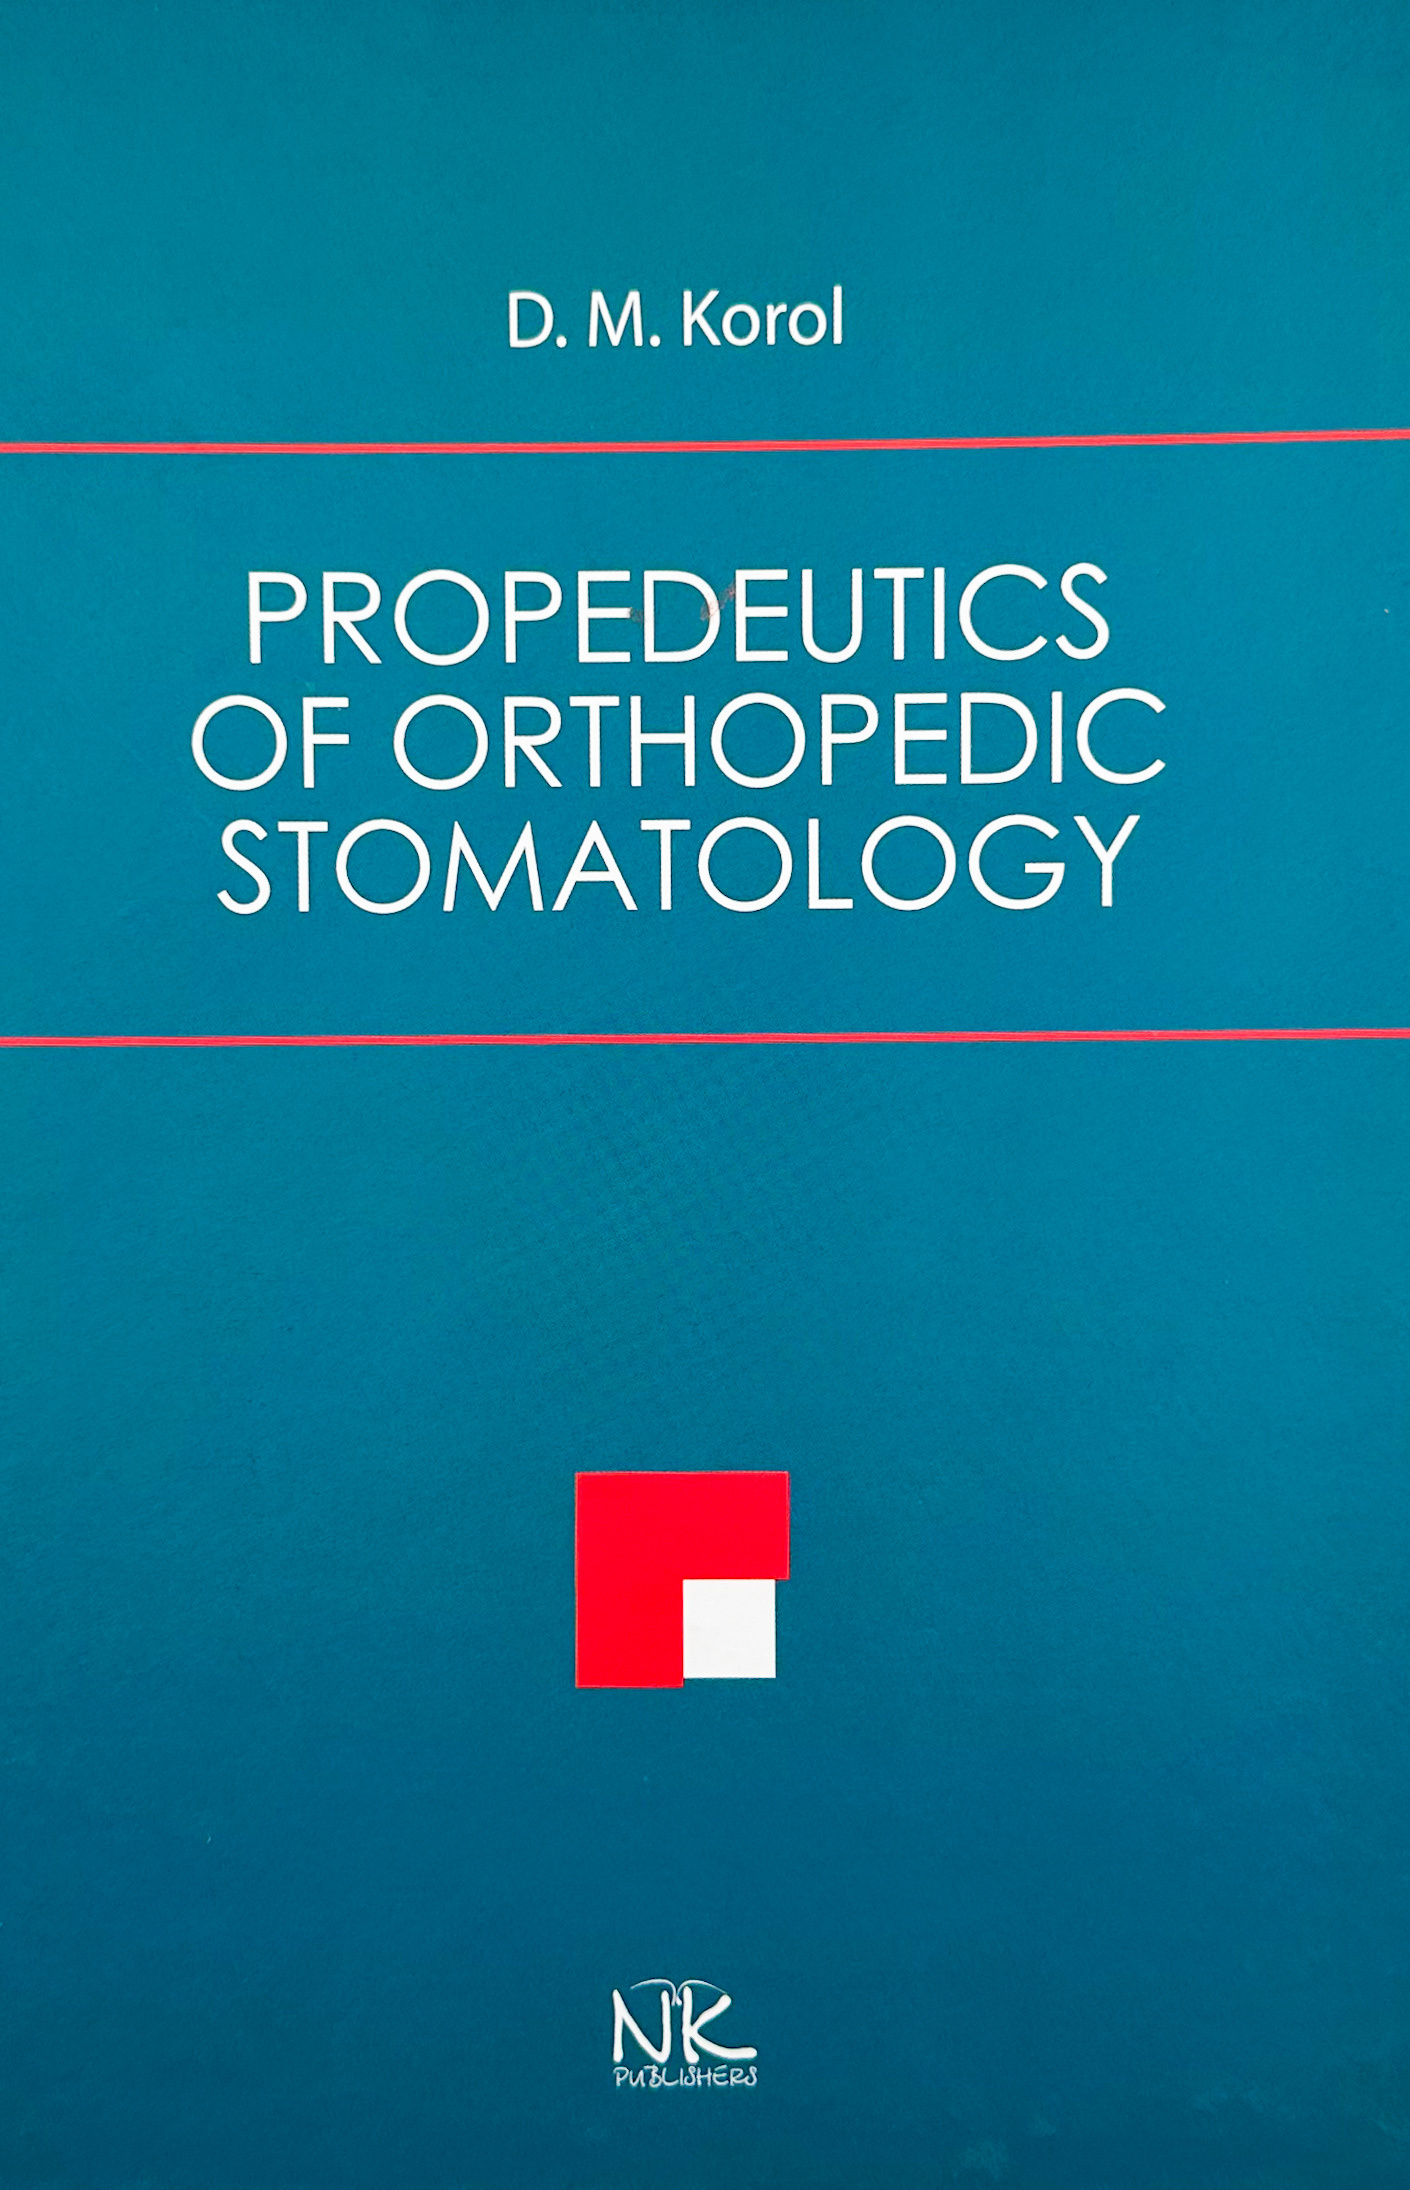 Propedeutics of Orthopedic Stomatology